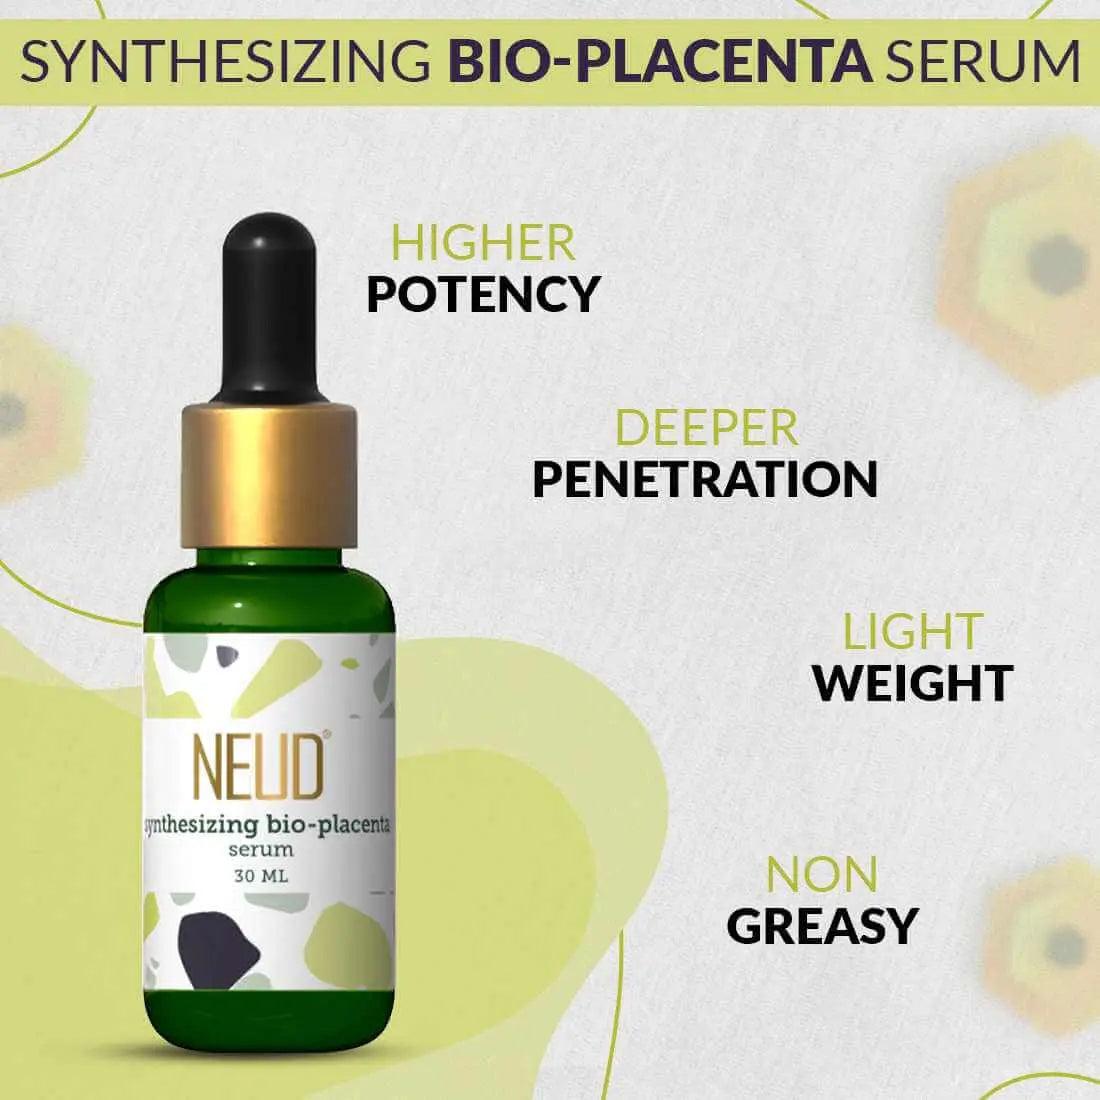 NEUD Synthesizing Bio-Placenta Serum With Hyaluronic Acid - 30 ml